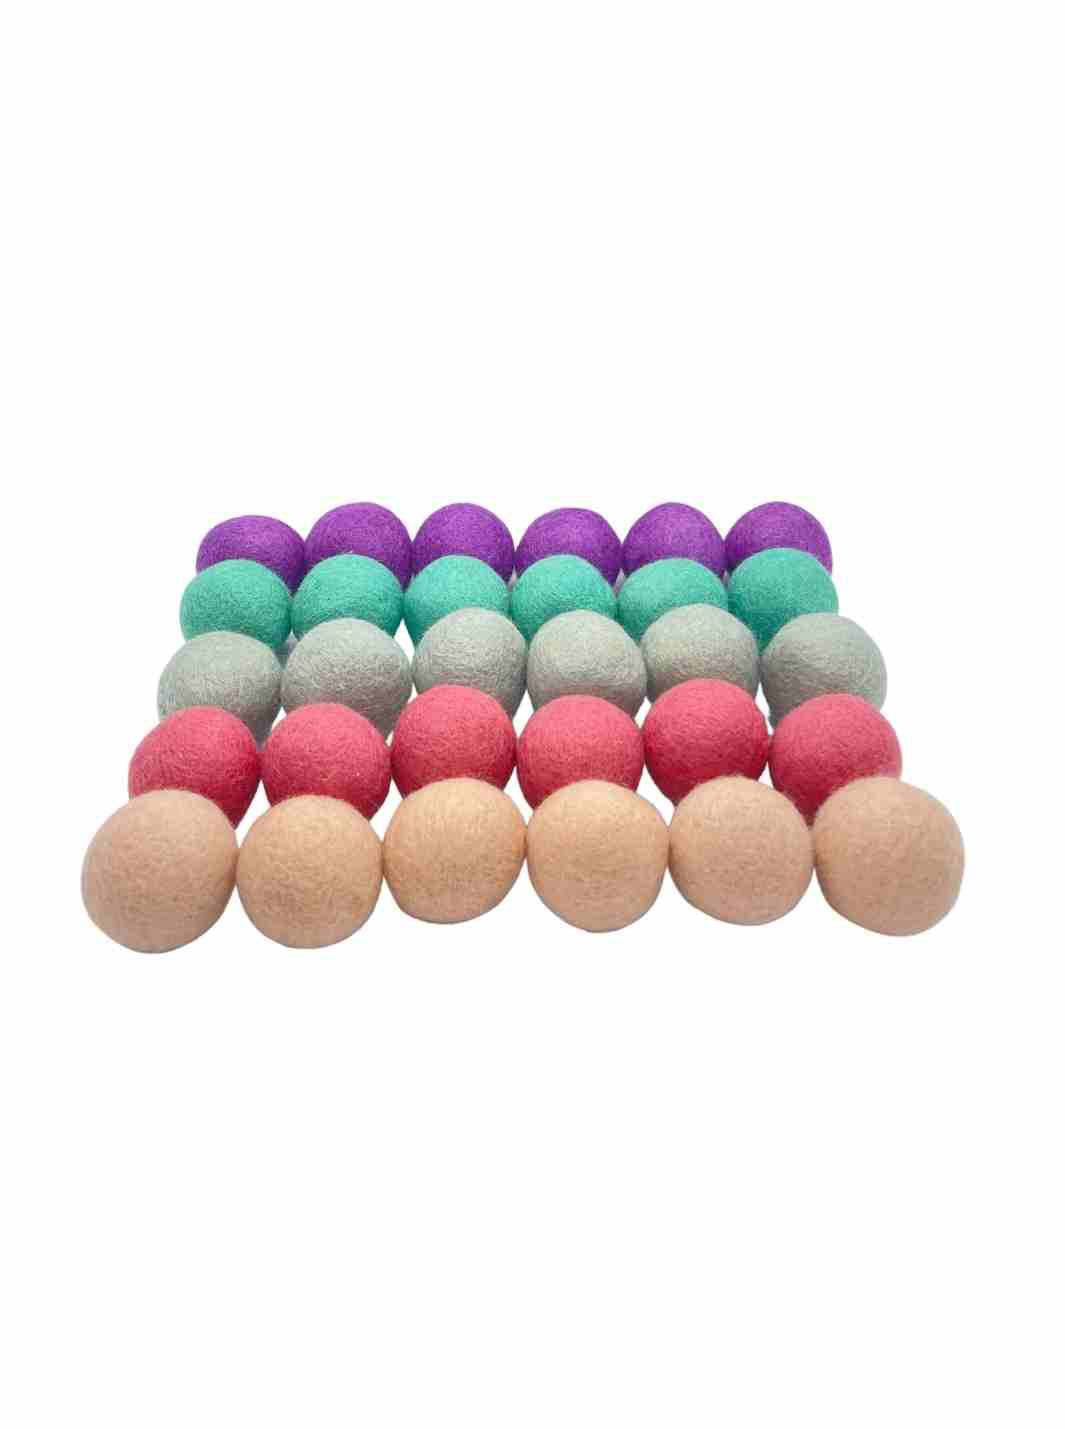 Educational Kid Toys | Felt Balls | Felt Sensory Balls - 4 cm x 30 (Pastel) | Eco Dog & Cat